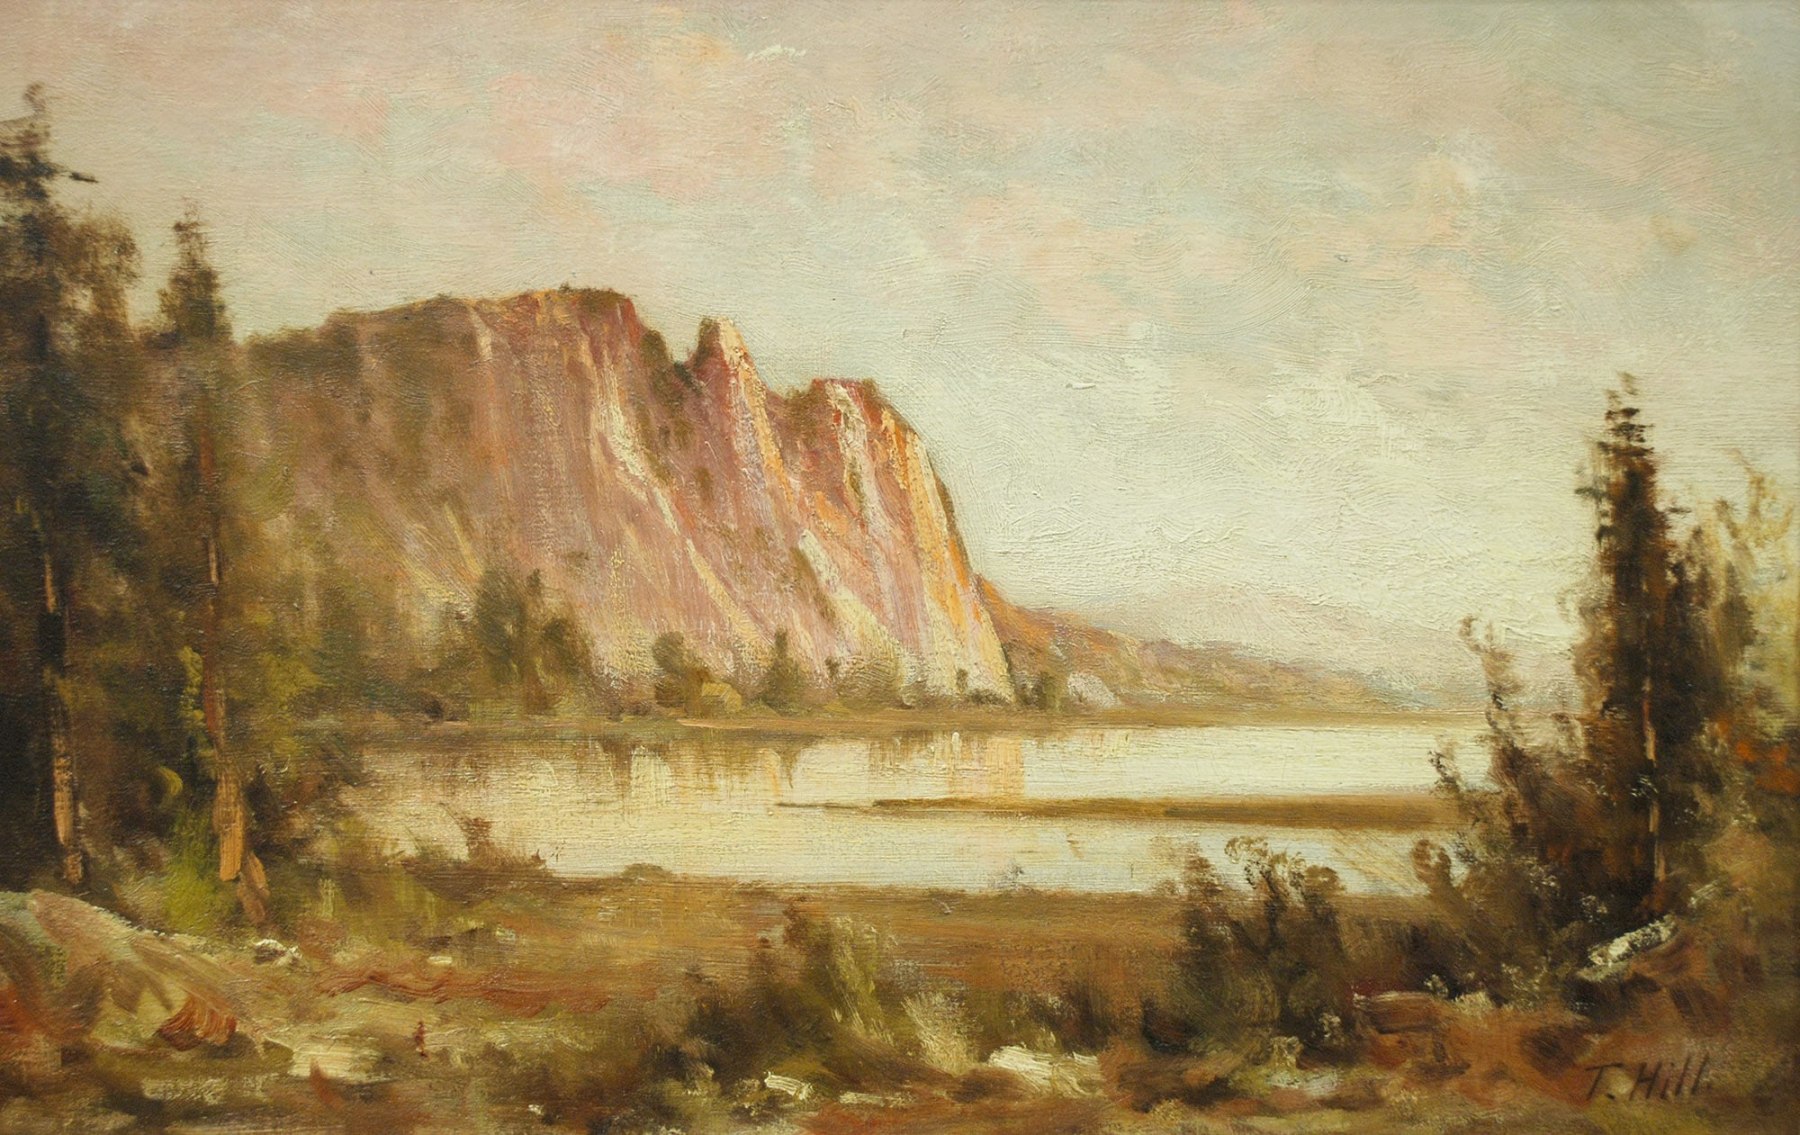 THOMAS HILL (1829-1908), Lake View at Dawn, c. 1880s